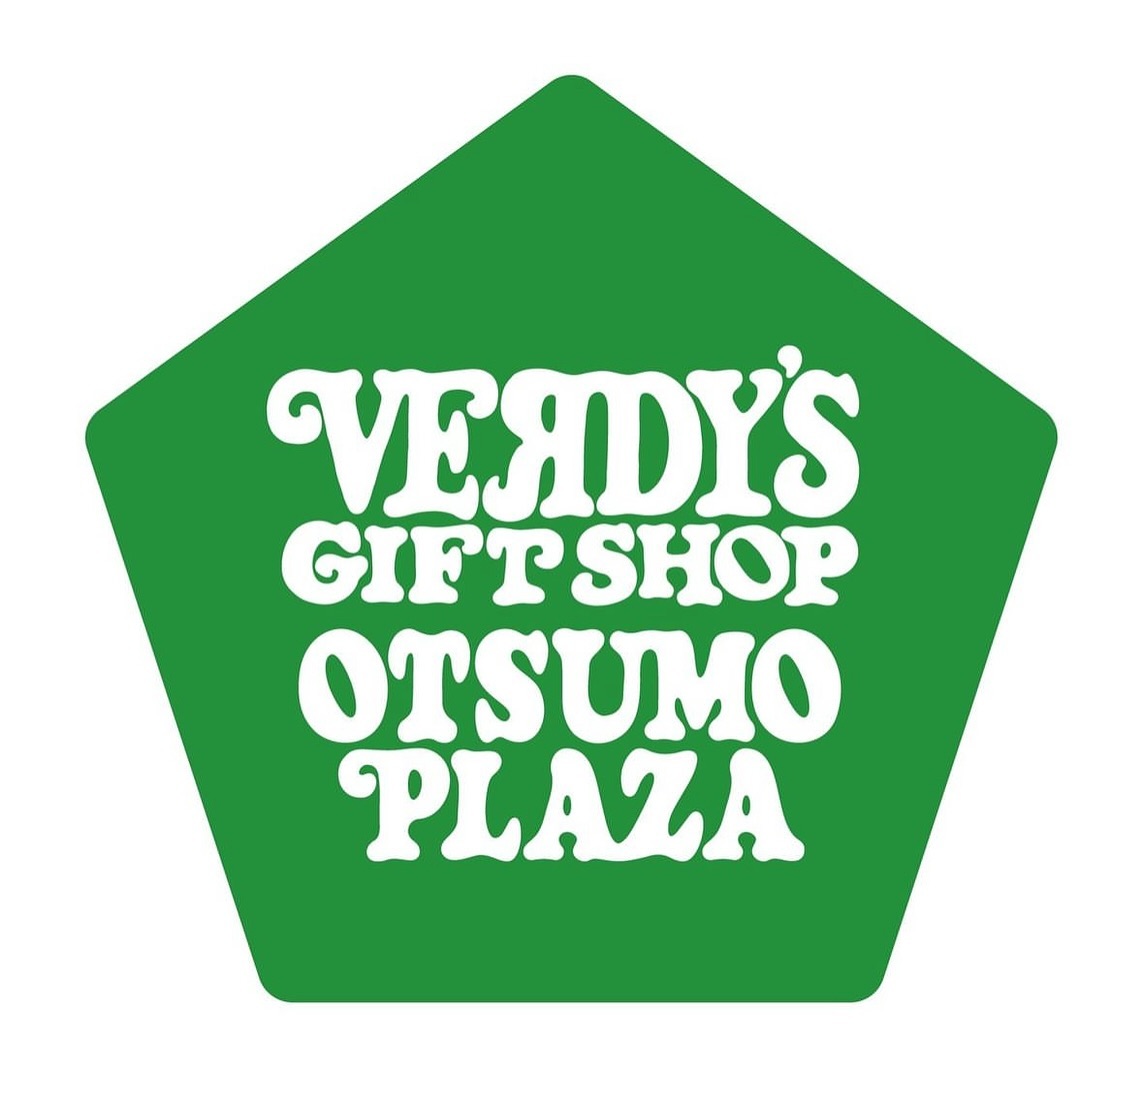 OTSUMO PLAZA にて『VERDY’S GIFT SHOP』がスタート